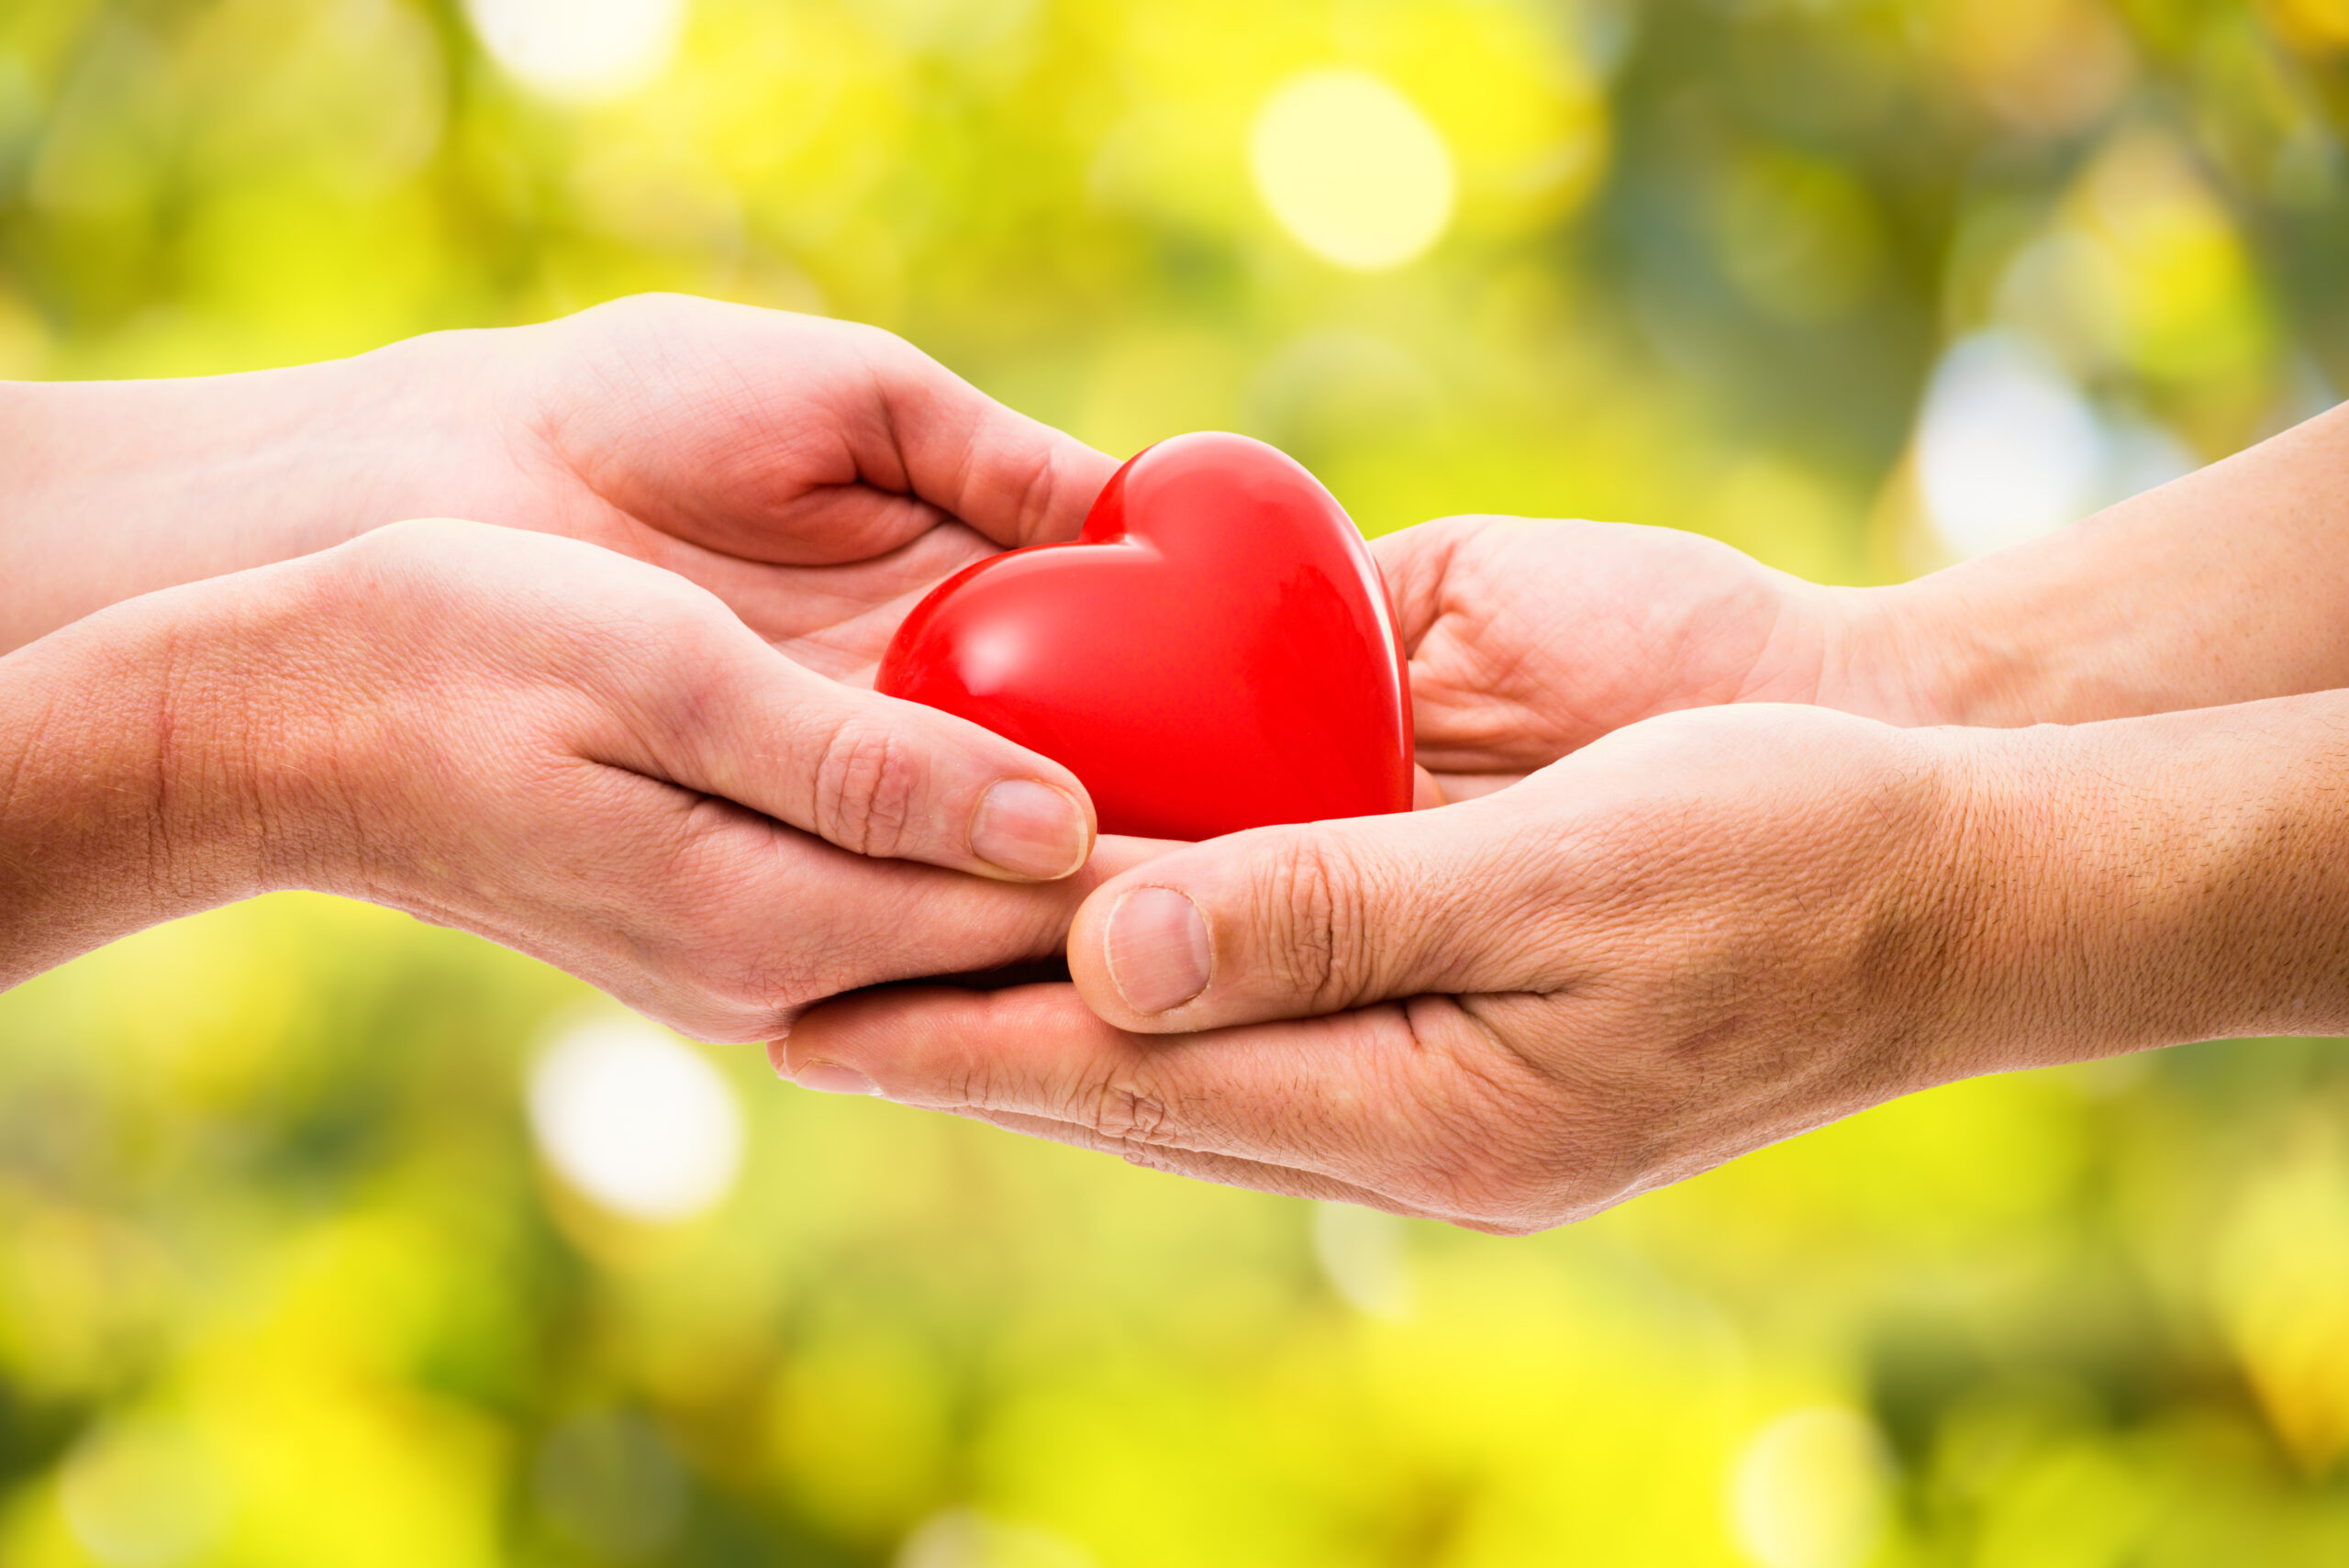 Ein rotes Herz wird von einer Hand in die nächste überreicht. Sichtbar sind nur die beiden Hände und das Herz.